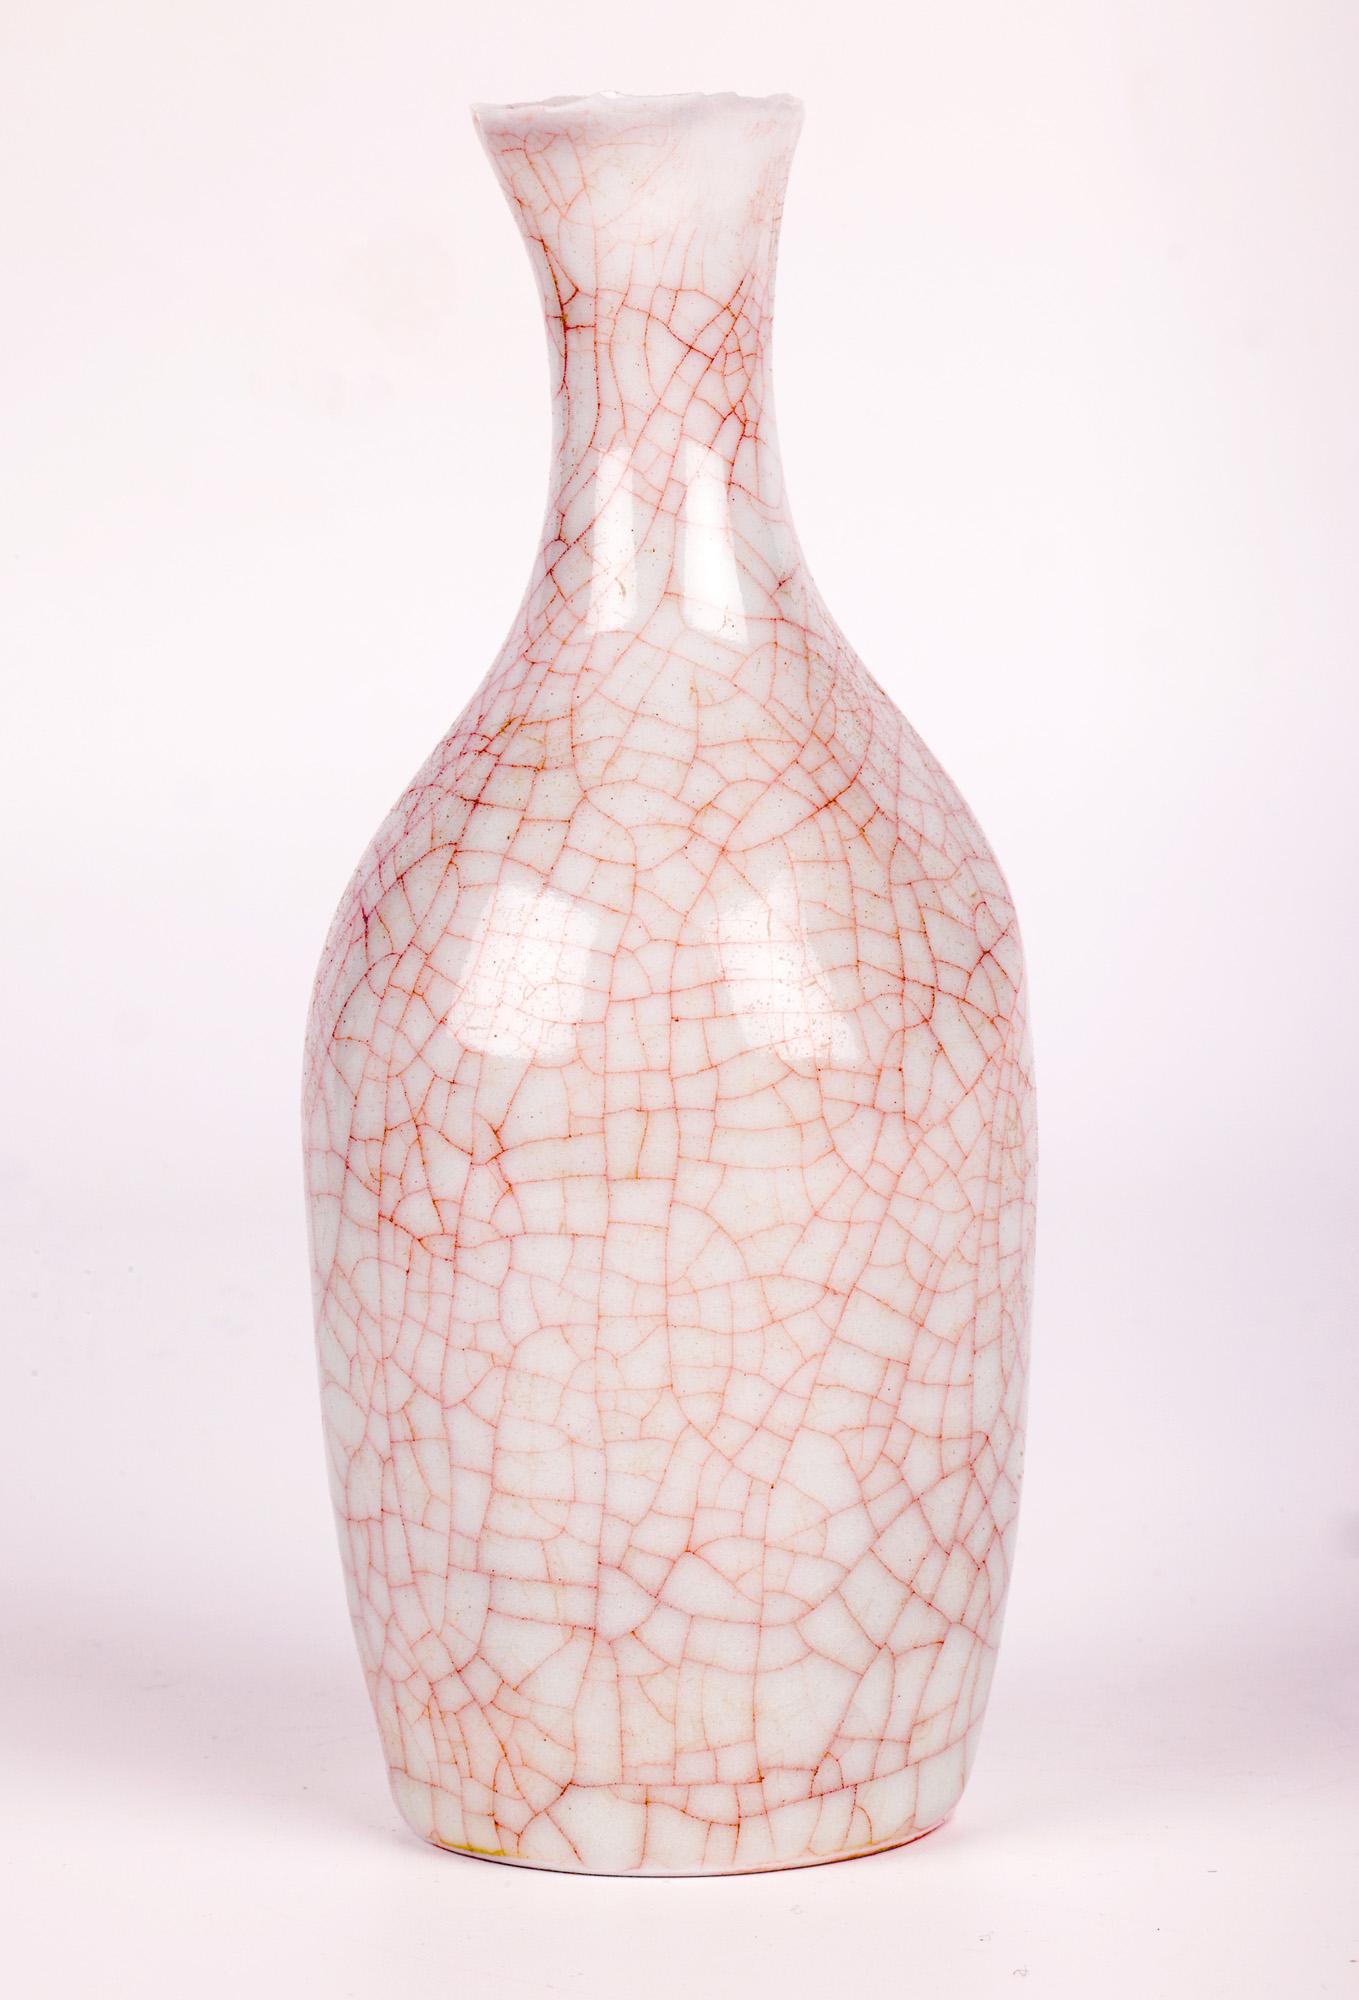 Sonia Lewis Studio Ceramic Craquelure Glazed Bottle Vase For Sale 2